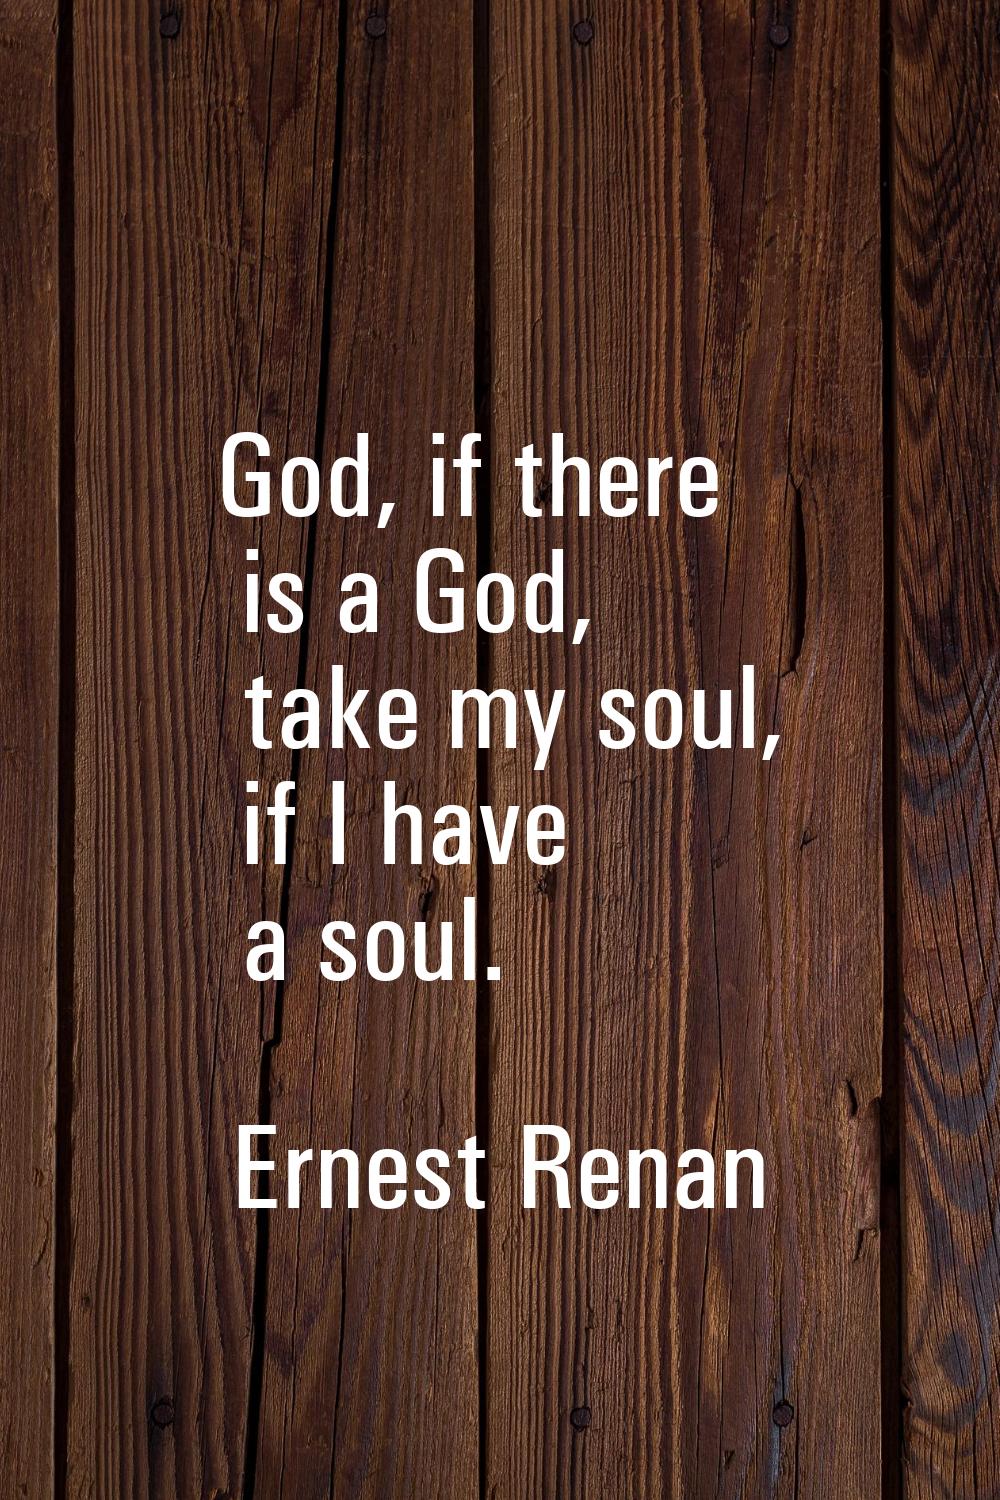 God, if there is a God, take my soul, if I have a soul.